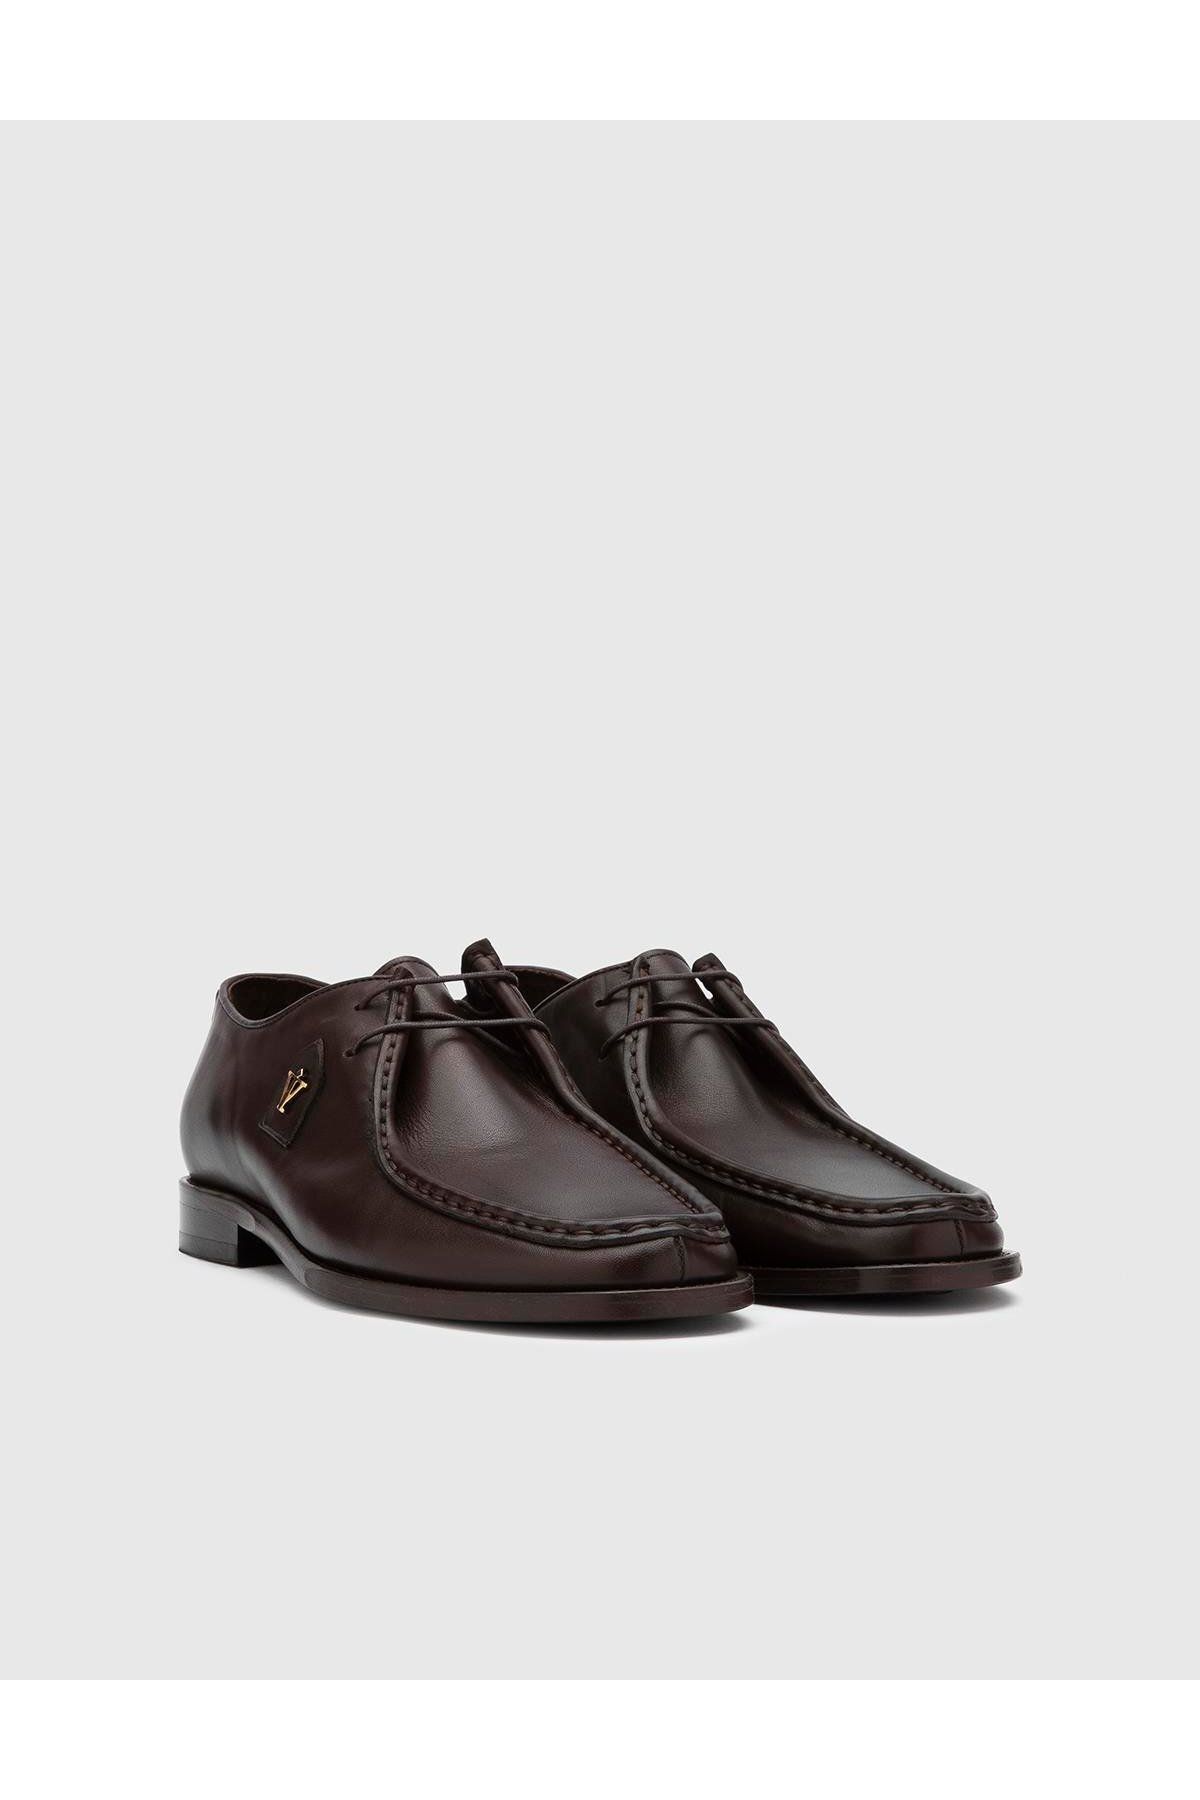 İlvi Espoo Hakiki Deri Erkek Analin Kahverengi Klasik Ayakkabı